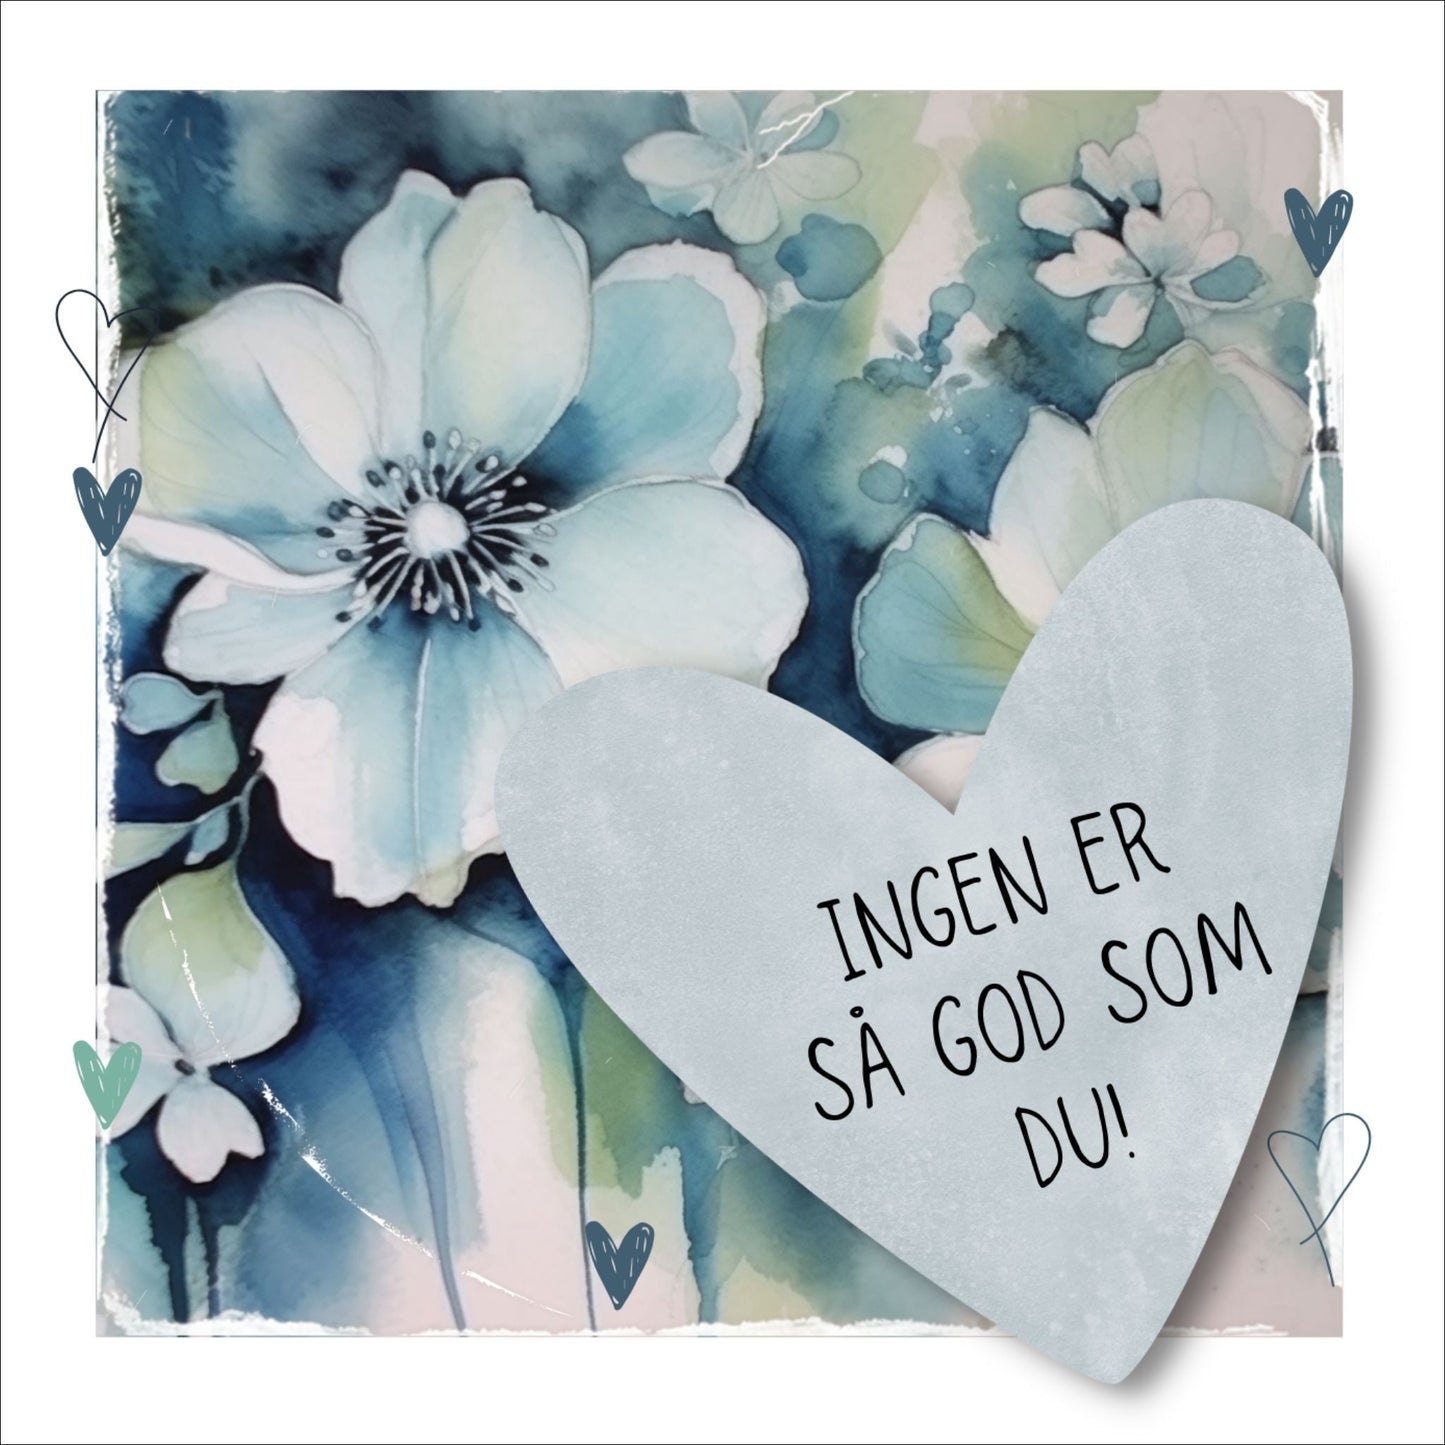 Grafisk plakat med et lyseblått hjerte påført tekst "Ingen er så god som du!". Bagrunn med blomster i blåtoner. Kortet har en hvit kant rundt på 1,5 cm.